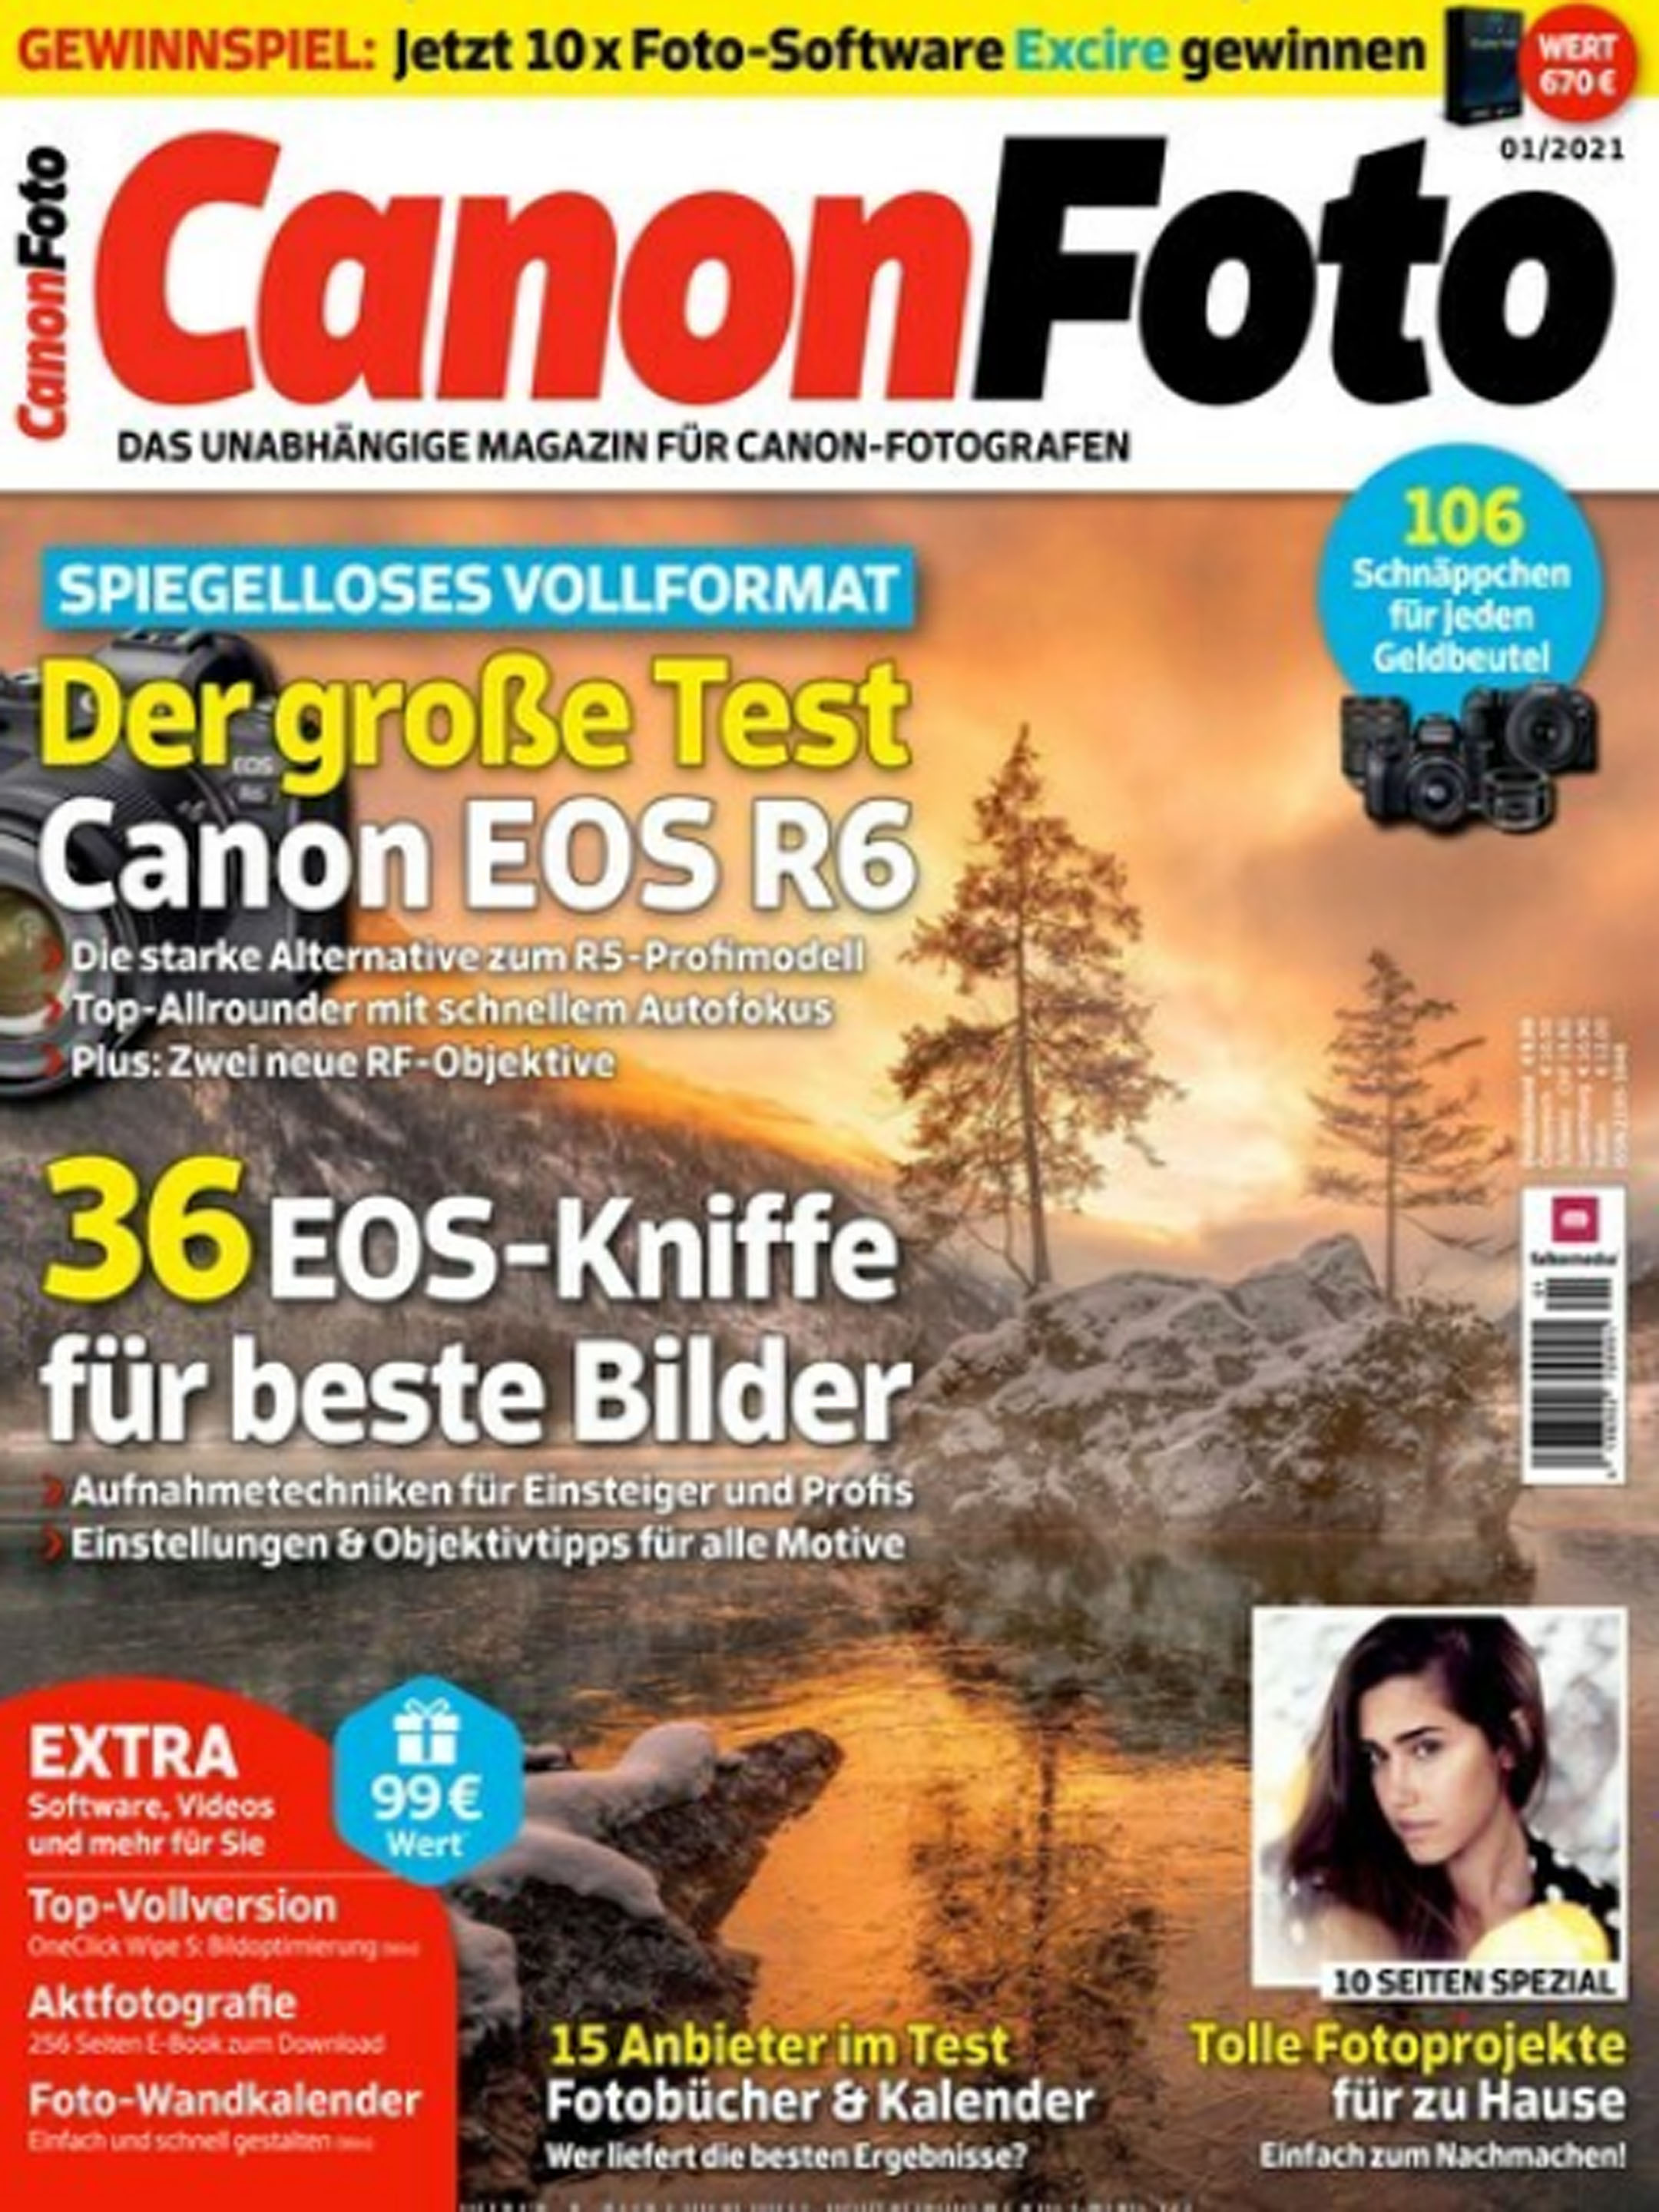 Das aktuelle Cover von CanonFoto. 